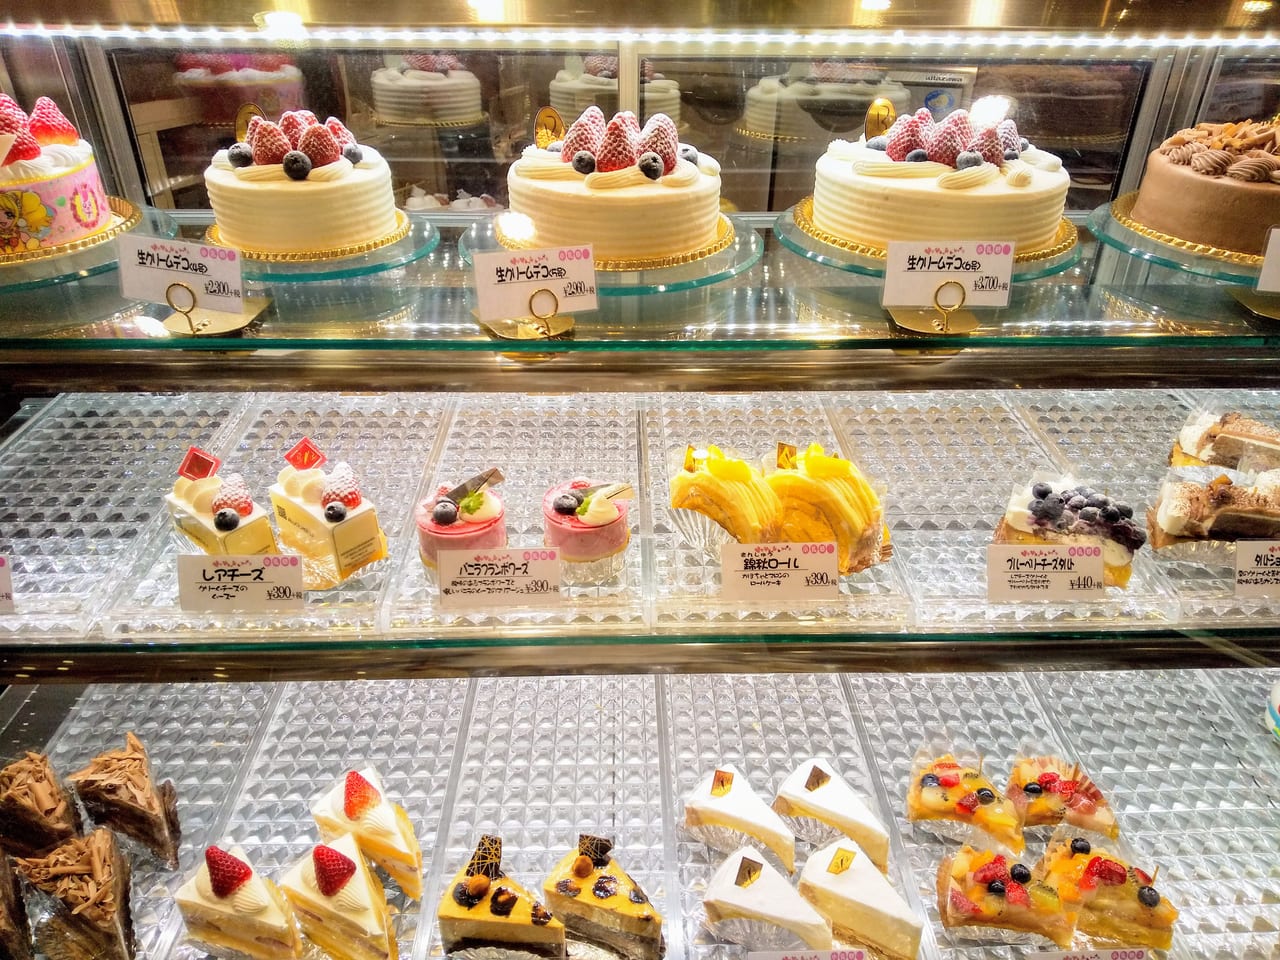 大和市 市内のケーキ屋さん情報 クリスマスケーキ予約受付終了となっても店頭販売するお店もあります 号外net 大和市